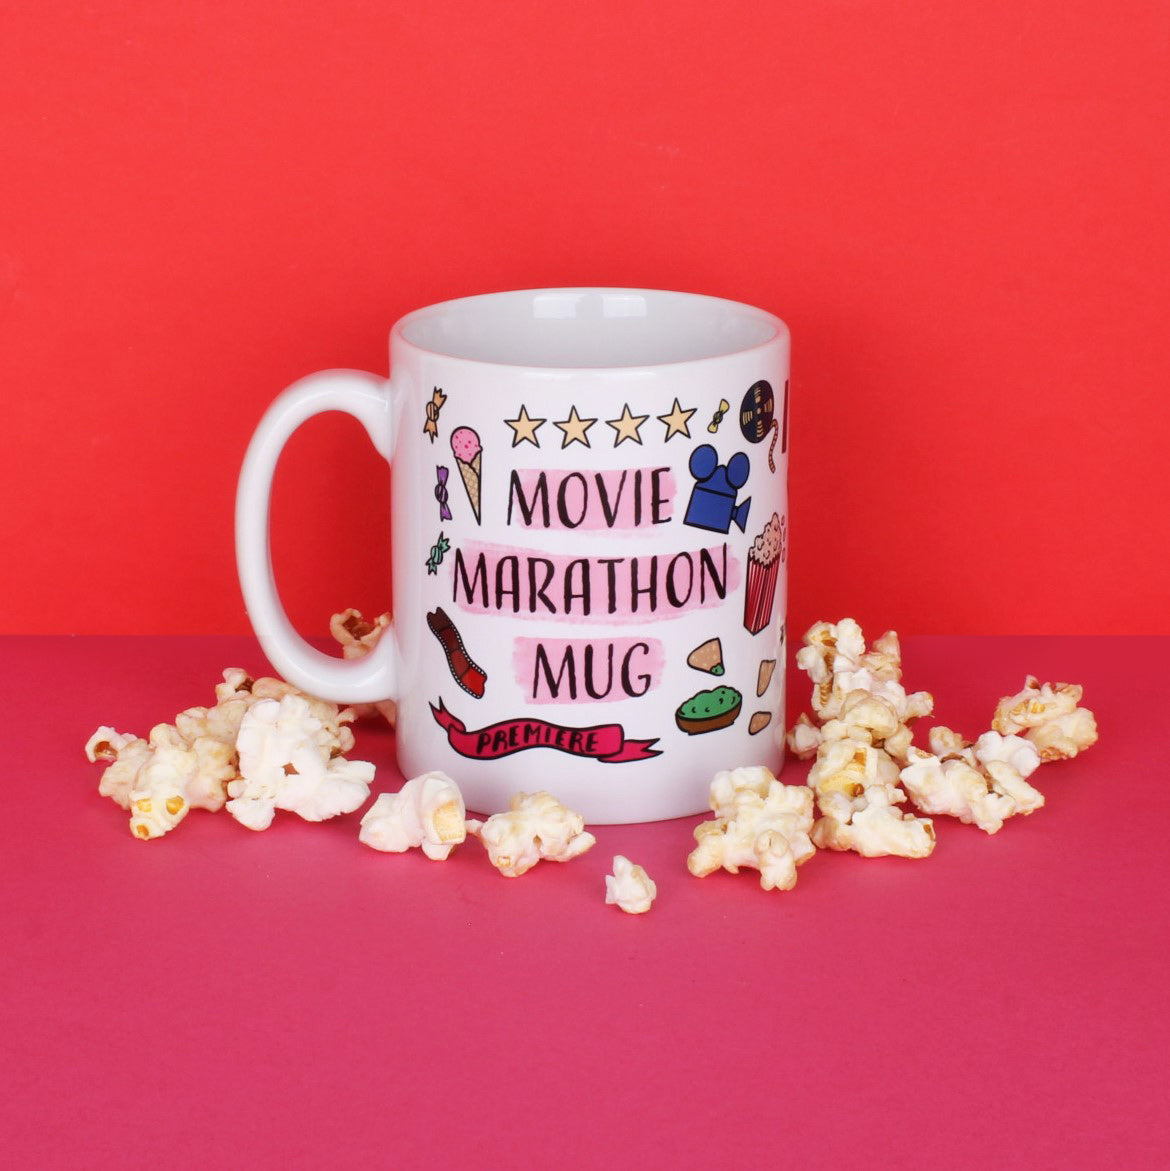 My Movie Marathon Mug